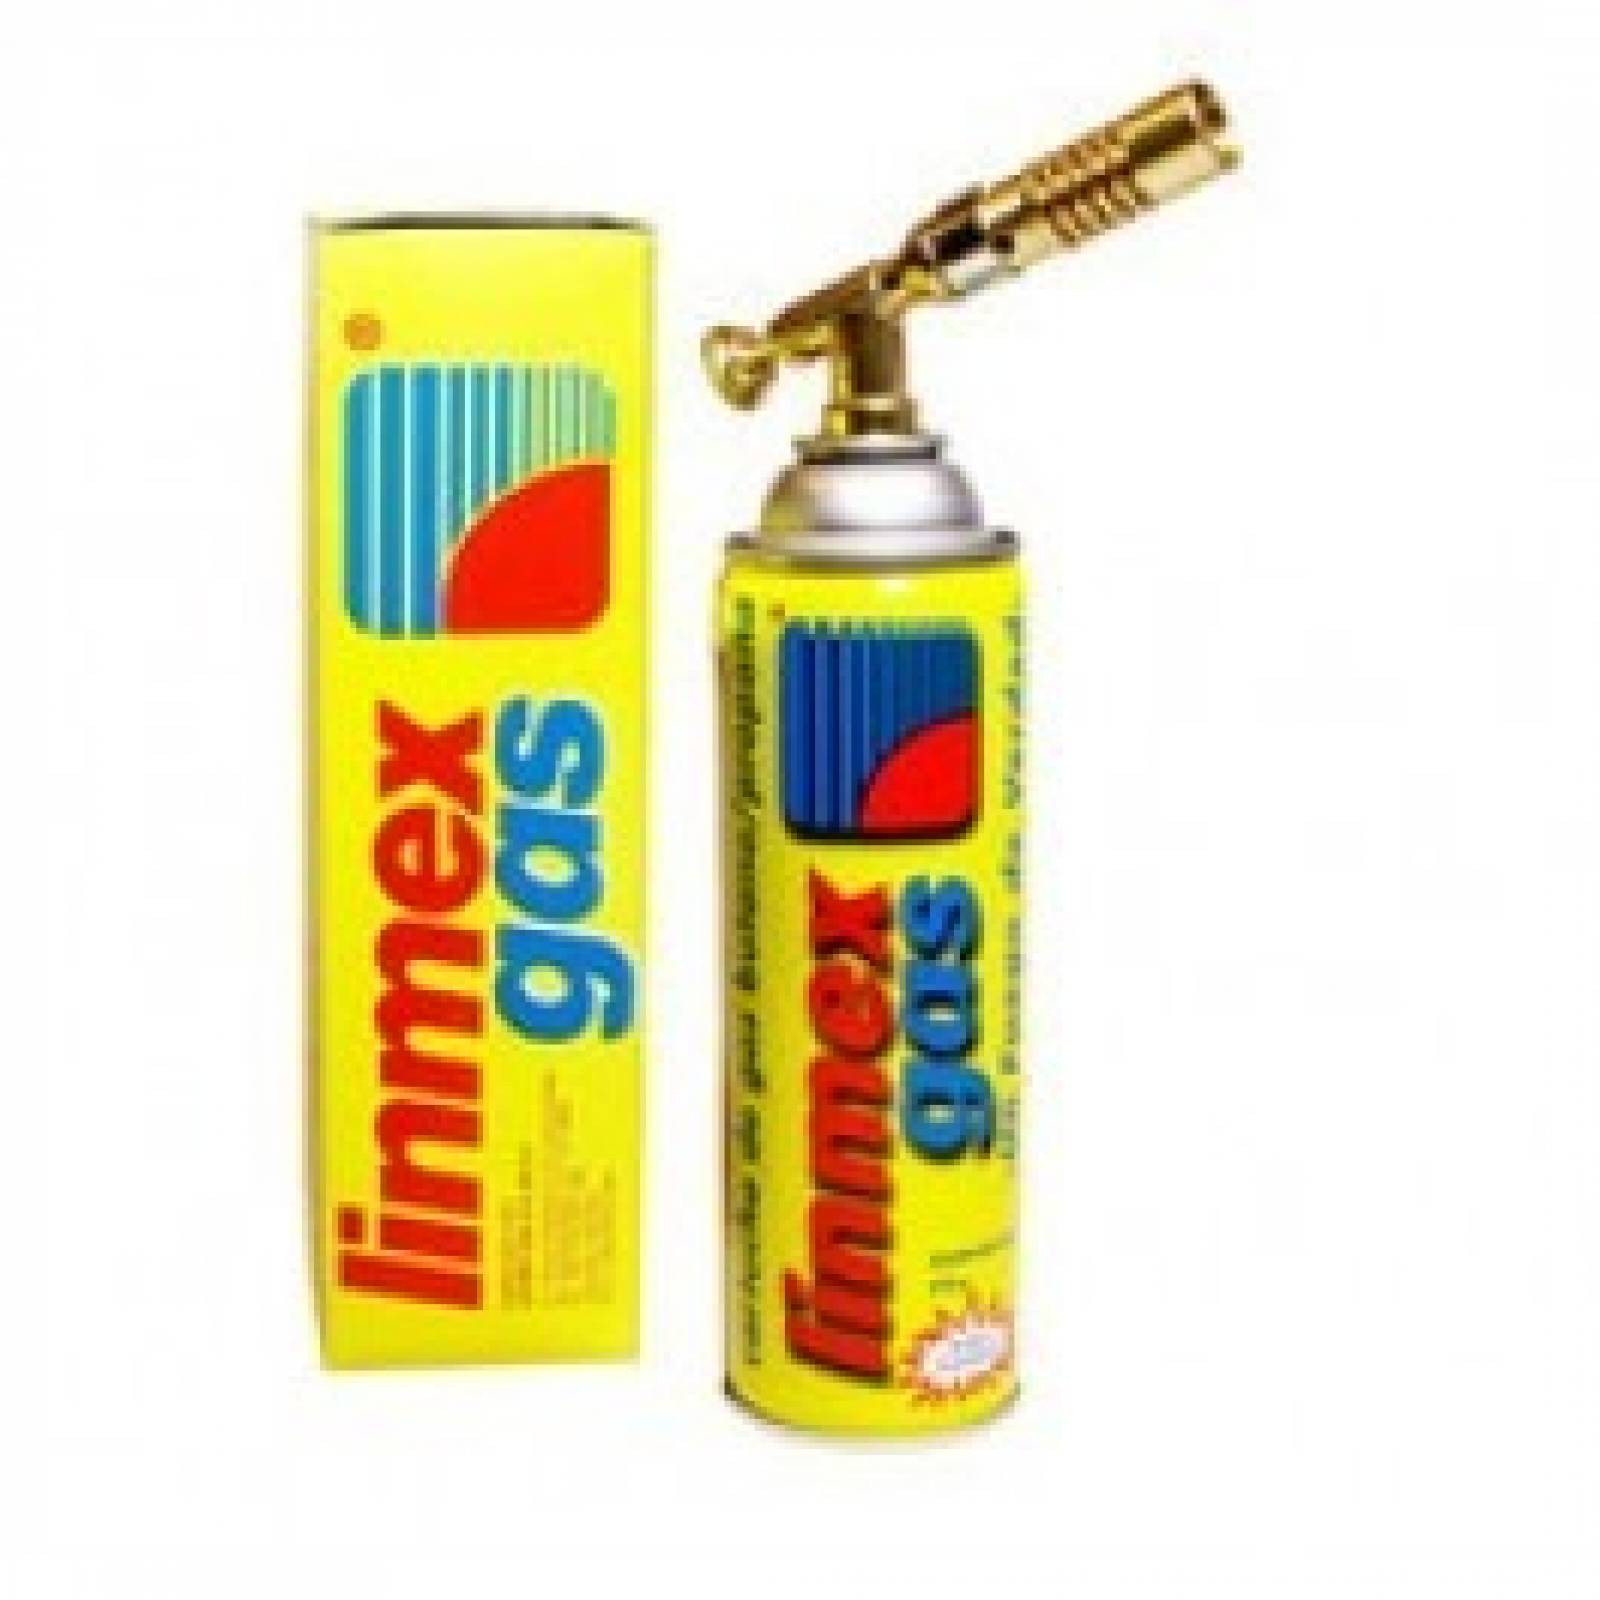 Soplete Gas G-3 1 134 Linmex-Tumbo